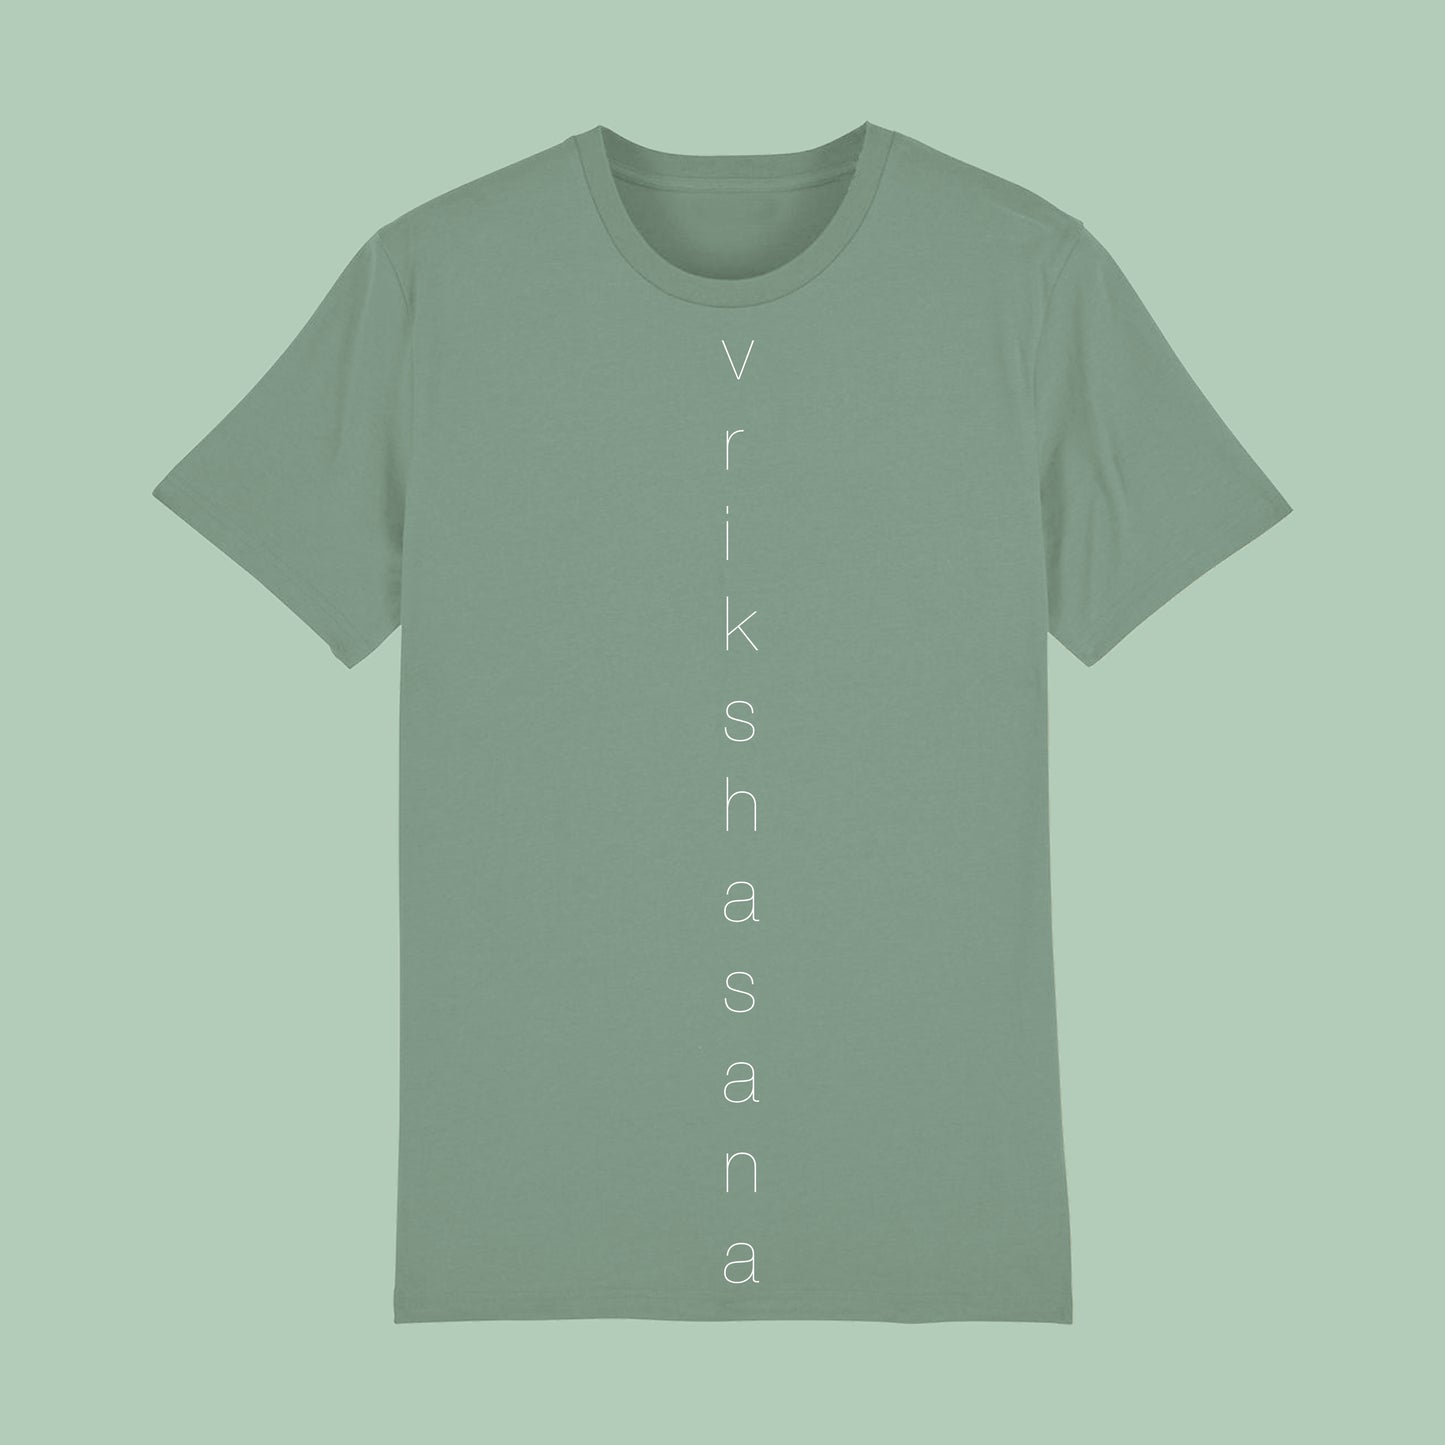 Yoga T-Shirt (Vrikshasana)